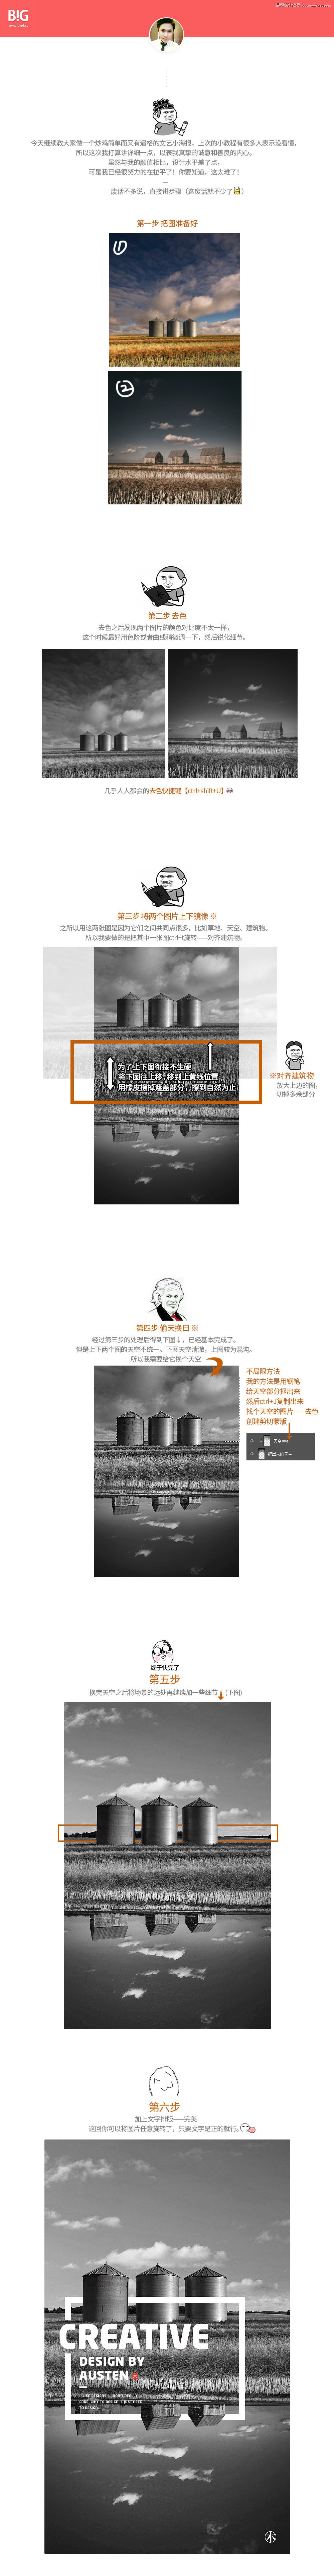 Photoshop简单制作黑白风格的海报效果图,PS教程,素材中国网